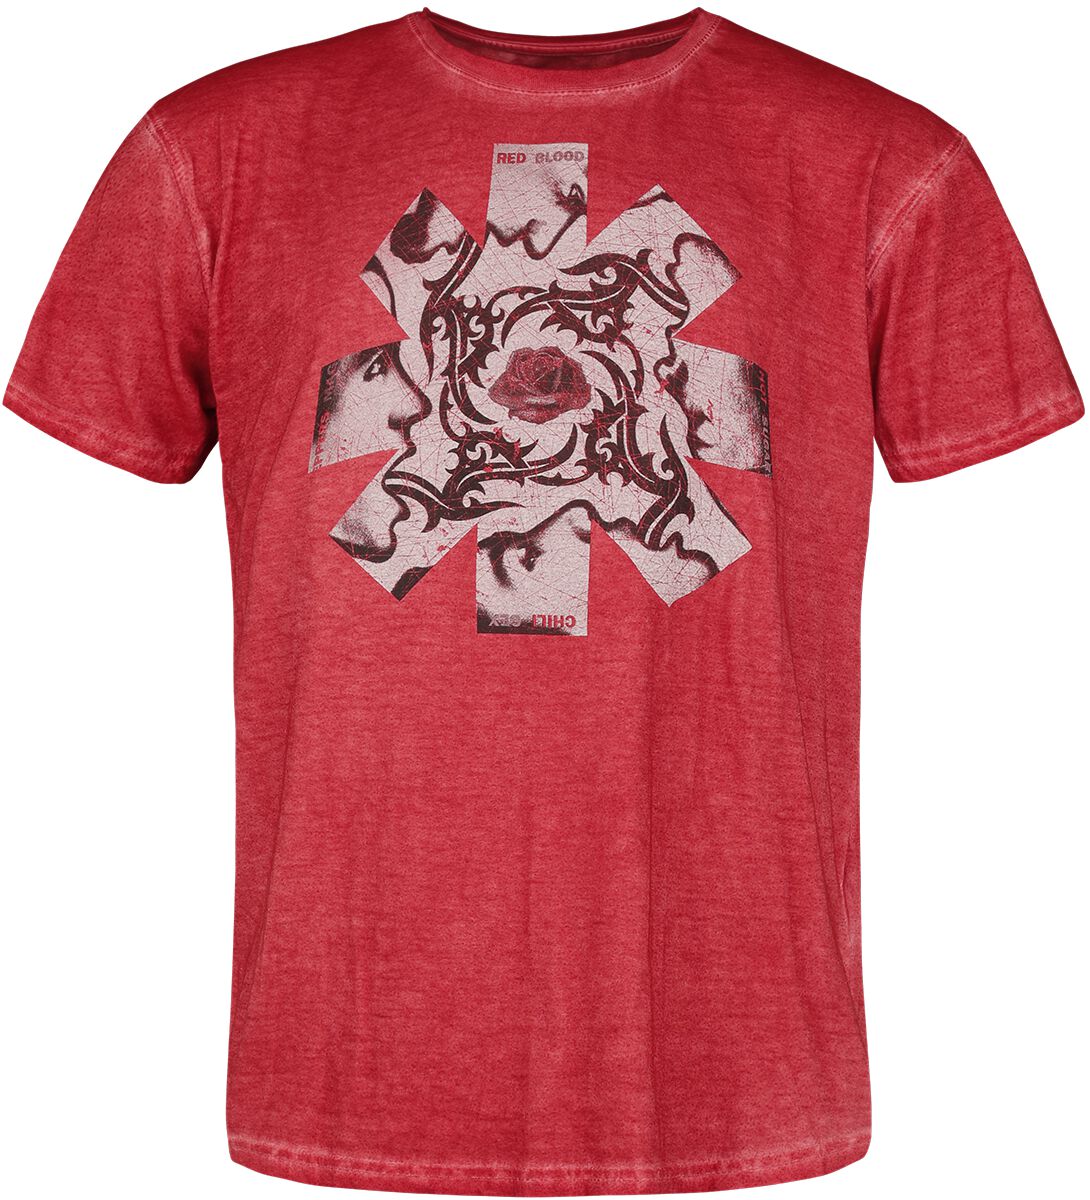 Red Hot Chili Peppers T-Shirt - Blood, Sugar, Sex, & Magik - S bis 3XL - für Männer - Größe S - rot  - Lizenziertes Merchandise!